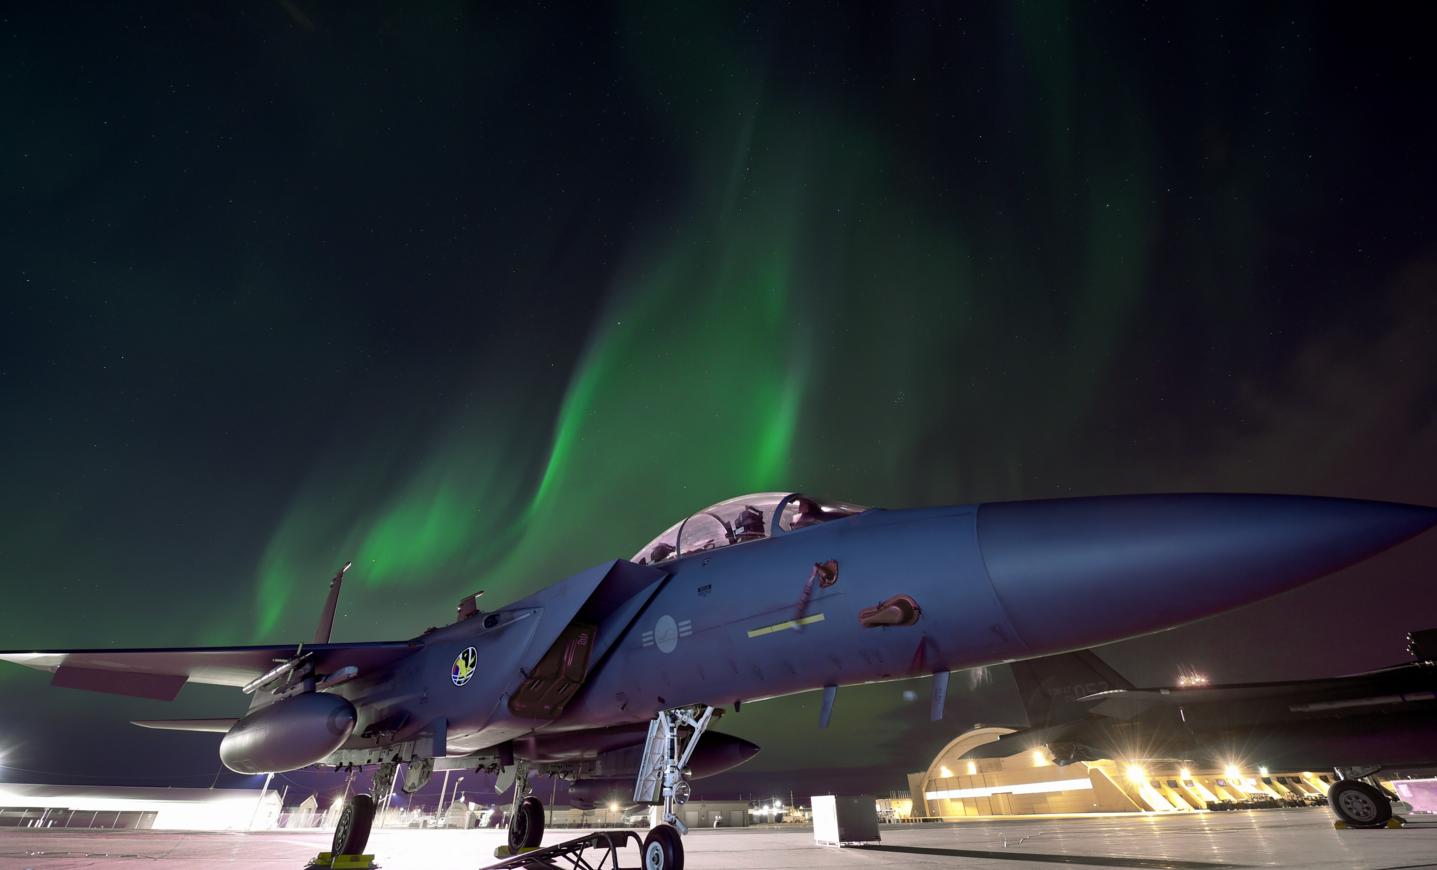 F-15 Slam Eagle ВВС Республики Корея, участвующий в учении RED FLAG-Alaska 19-1, в свете Северного сияния, фото сделано 19 октября 2018 года на АБ Eielson, Аляска